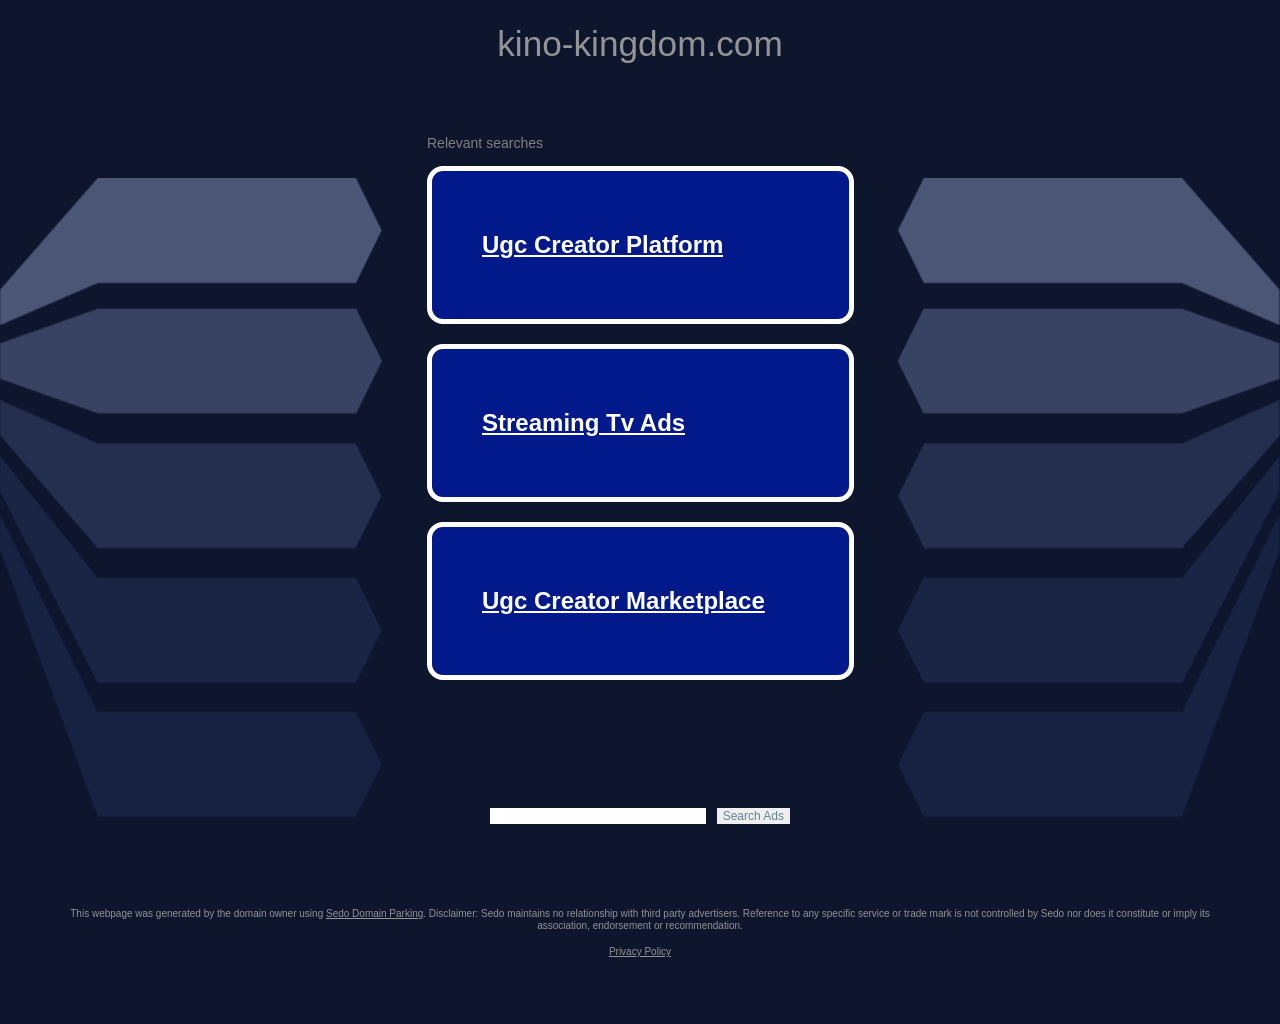 kino-kingdom.com